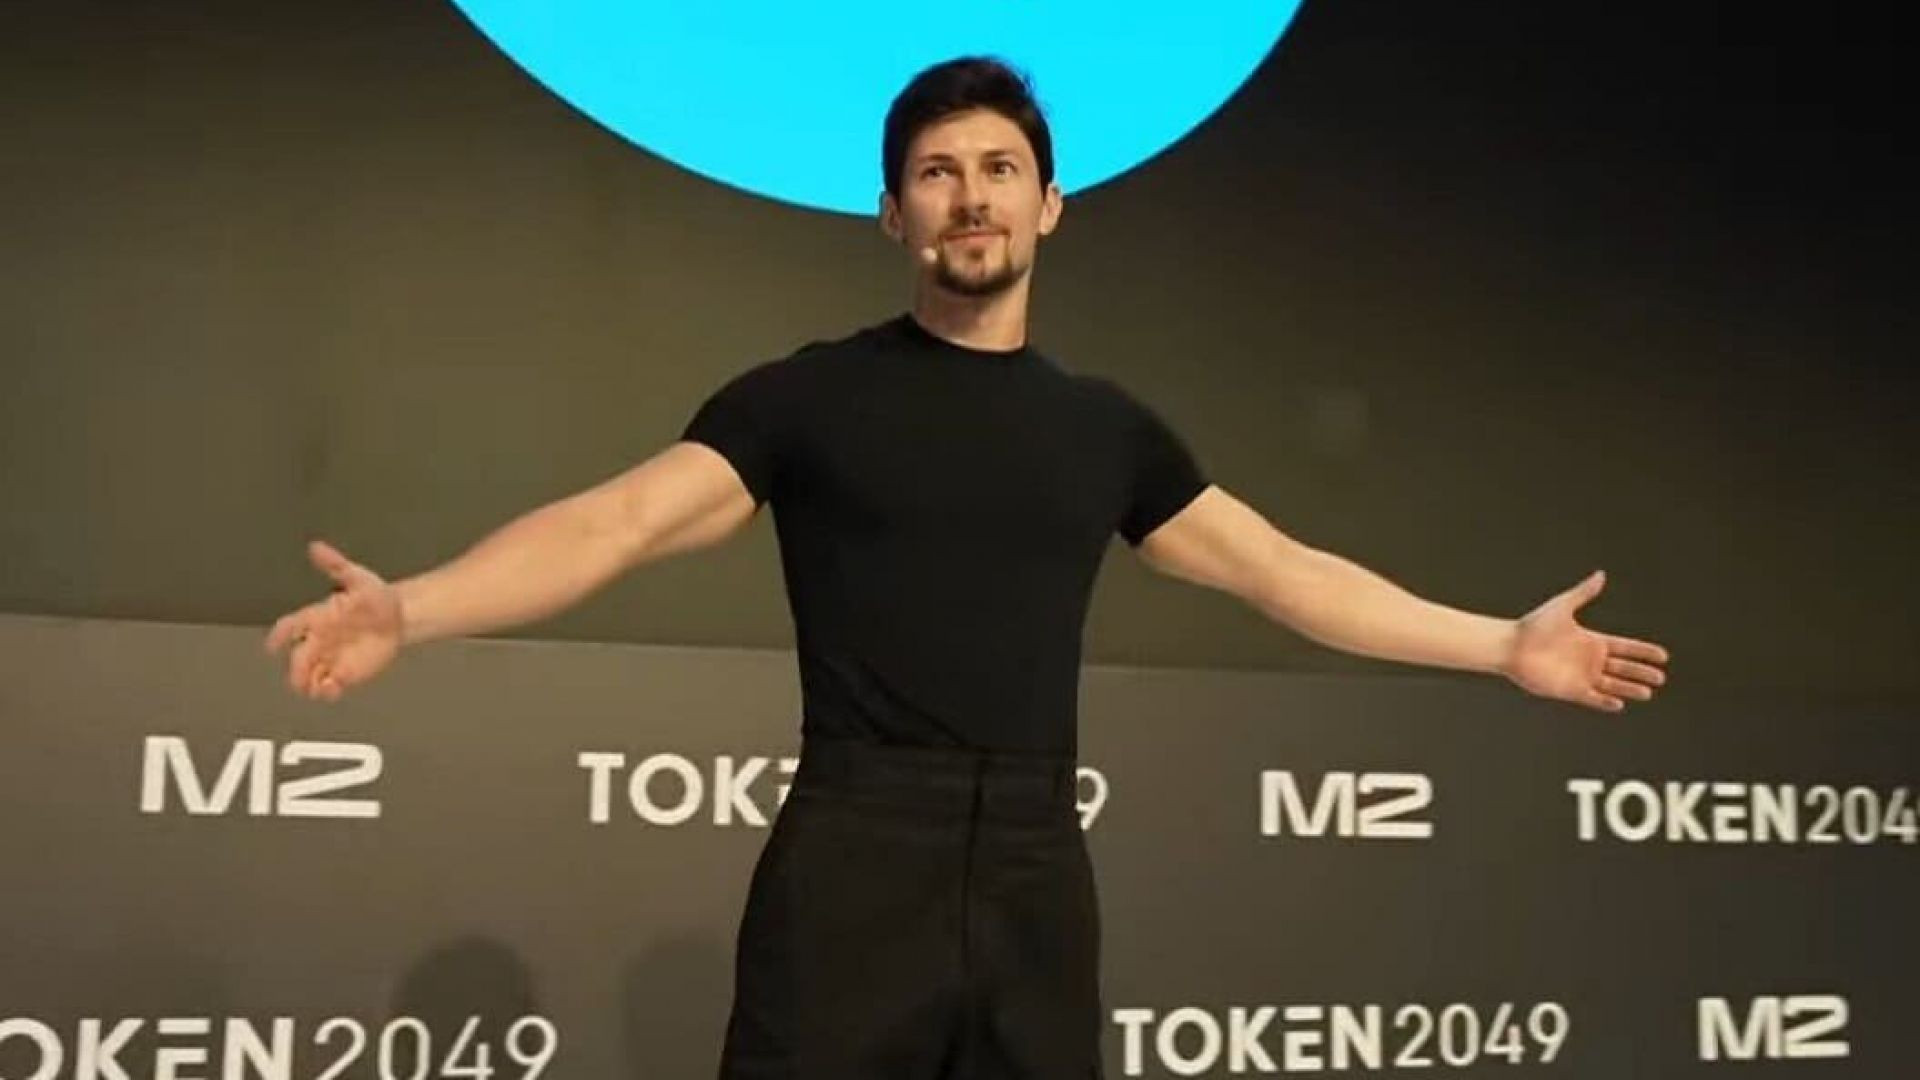 Выступление Павла Дурова (Глава Telegram) на конференции TOKEN 2049 на русском языке